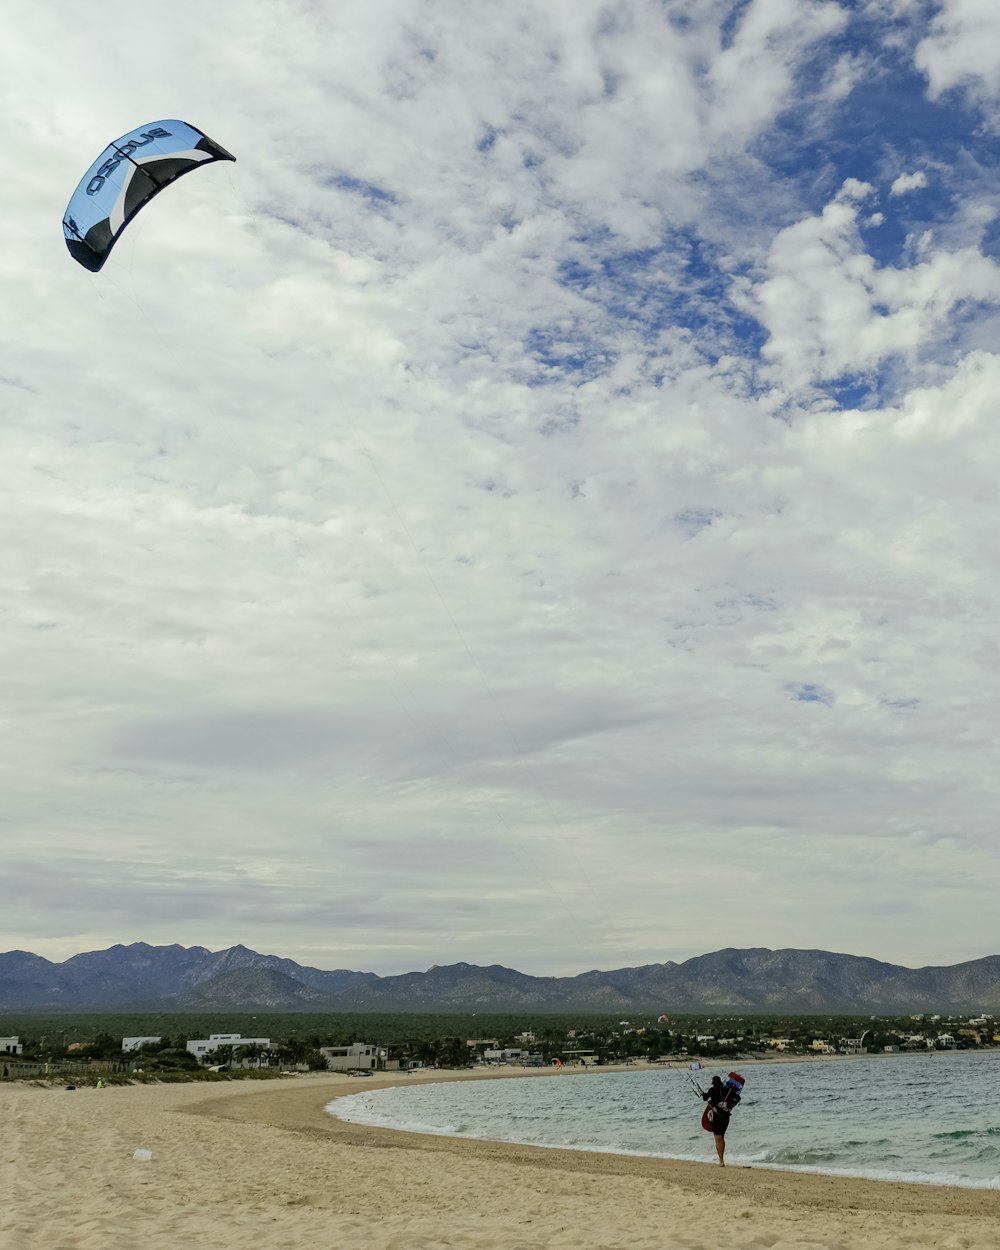 凧遊びをしながら海岸のそばに立っている人の写真